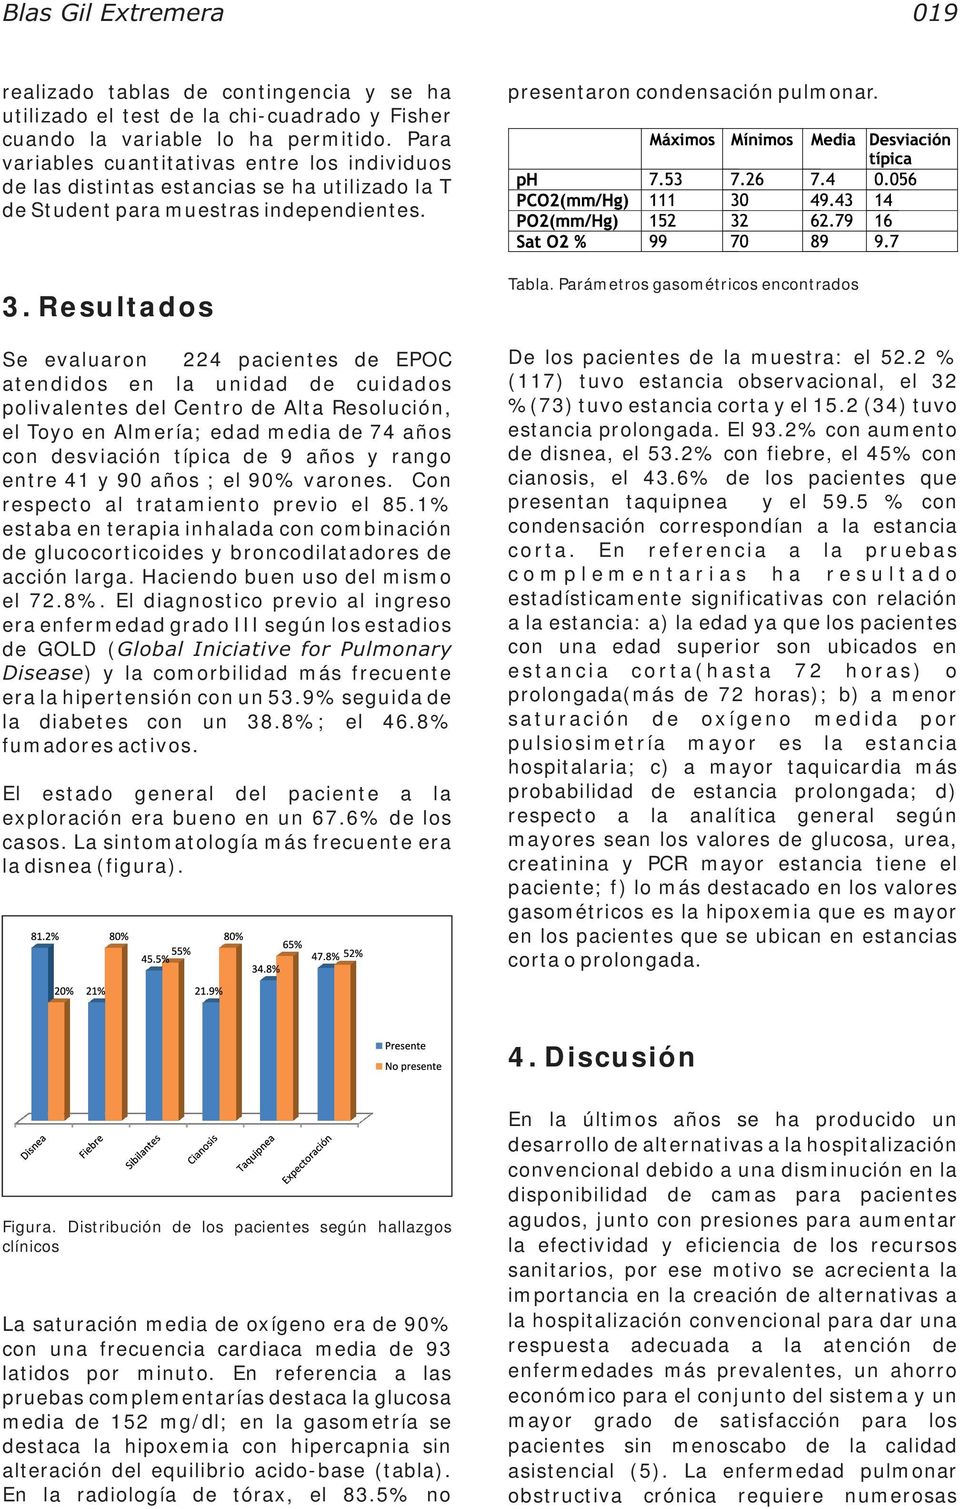 Resultados Se evaluaron 224 pacientes de EPOC atendidos en la unidad de cuidados polivalentes del Centro de Alta Resolución, el Toyo en Almería; edad media de 74 años con desviación típica de 9 años